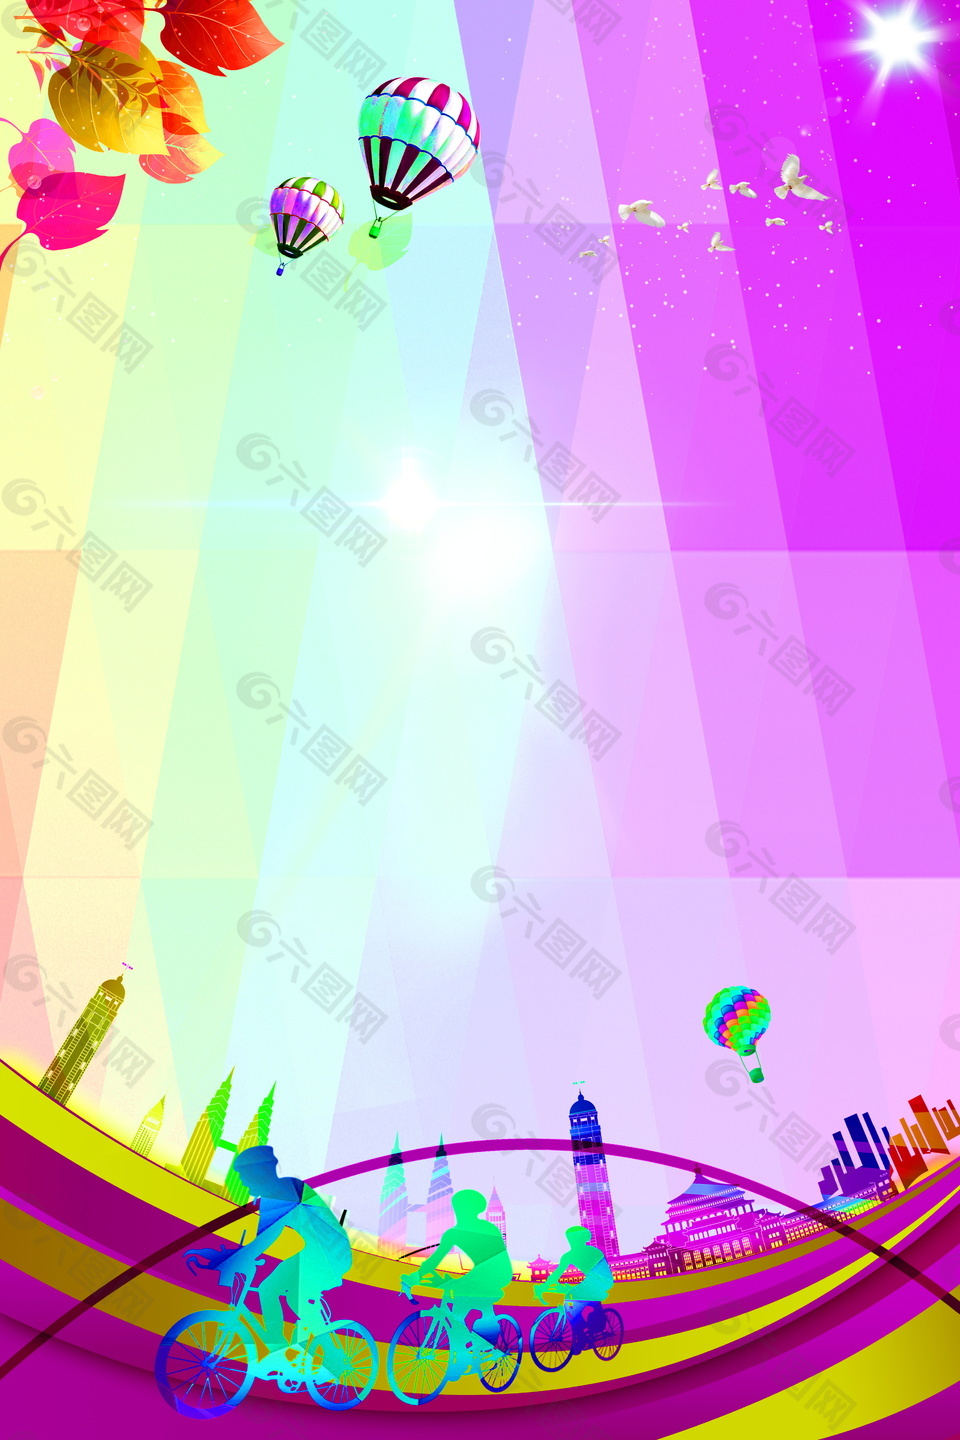 彩色枫叶热气球旋转文明城市广告背景素材